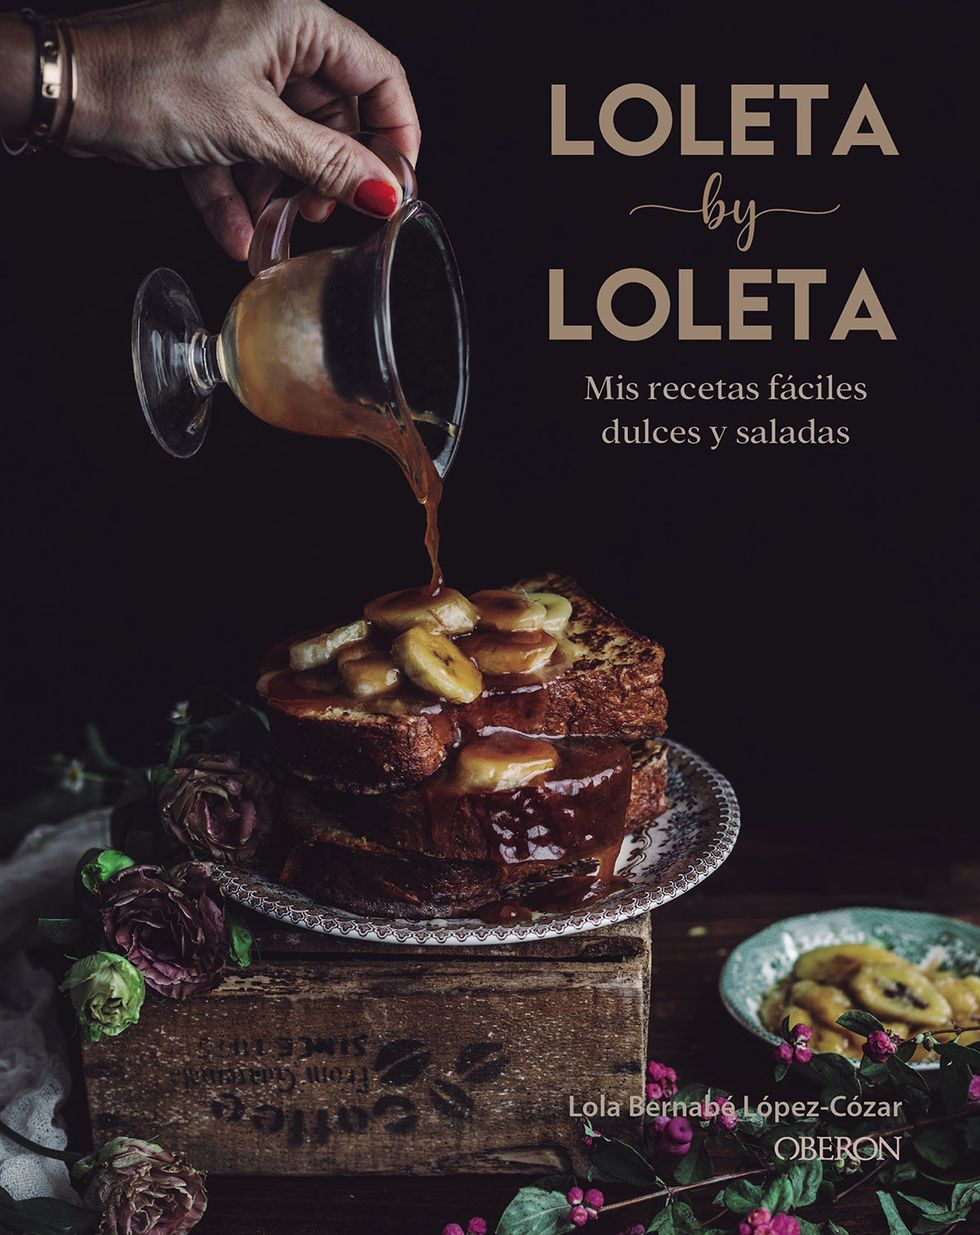 libro cocina y recetas loleta by loleta, de lola bernabé